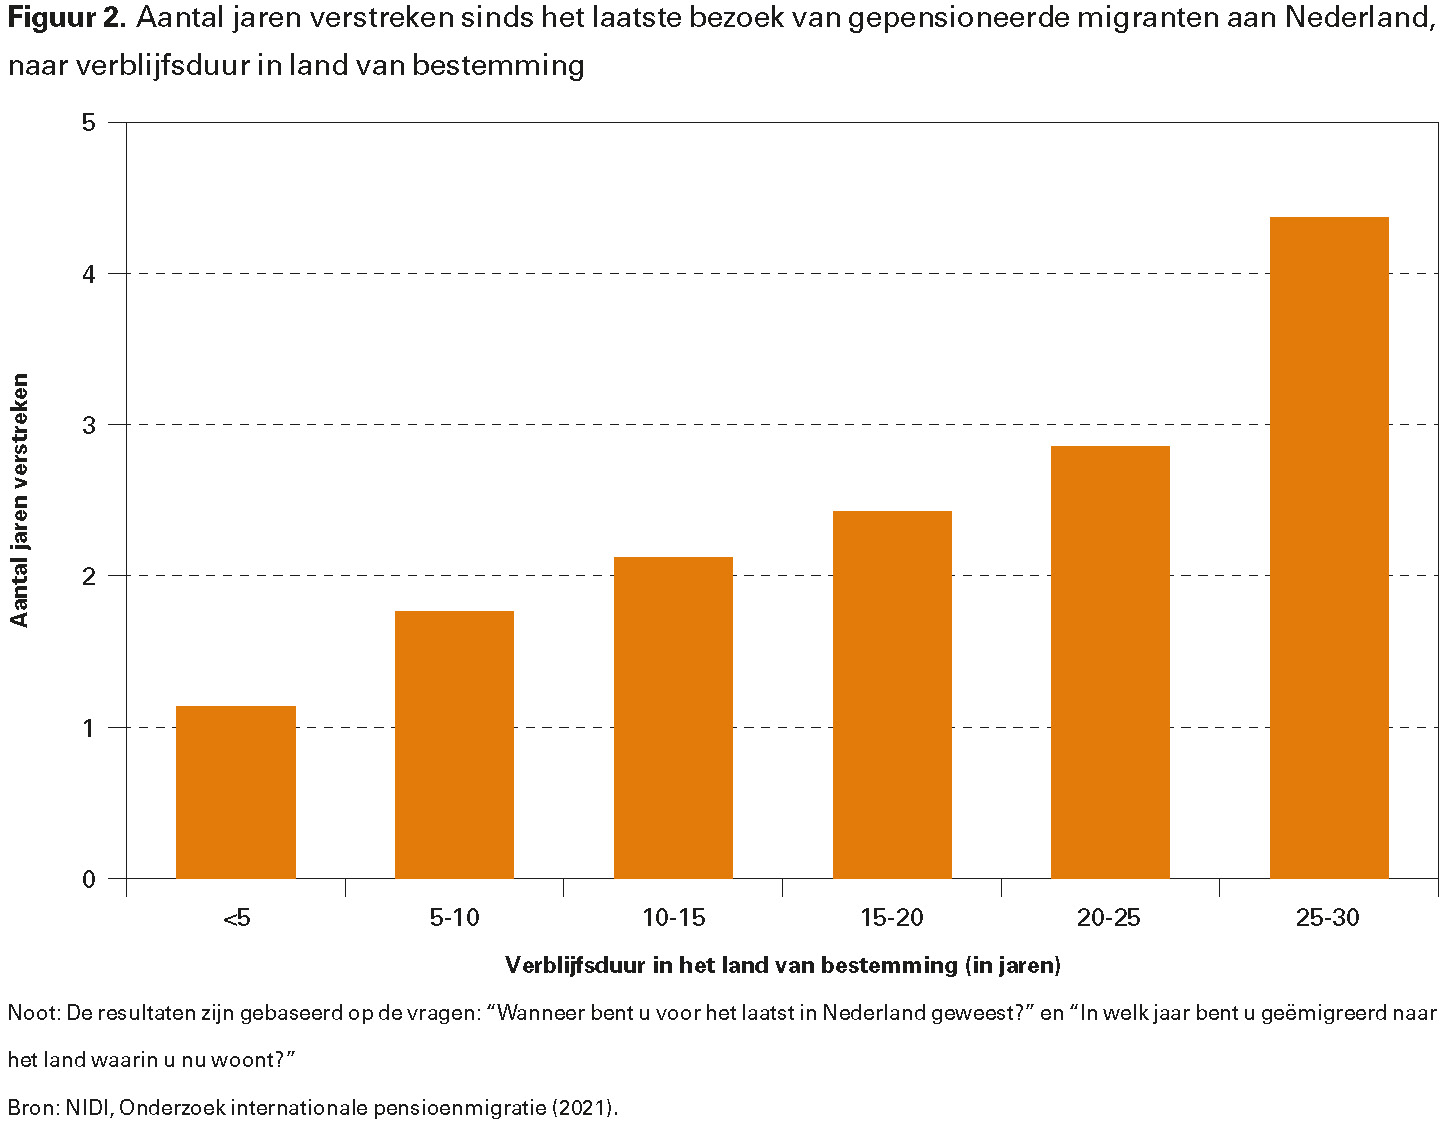 Figuur 2. Aantal jaren verstreken sinds het laatste bezoek van gepensioneerde migranten aan Nederland, naar verblijfsduur in land van bestemming